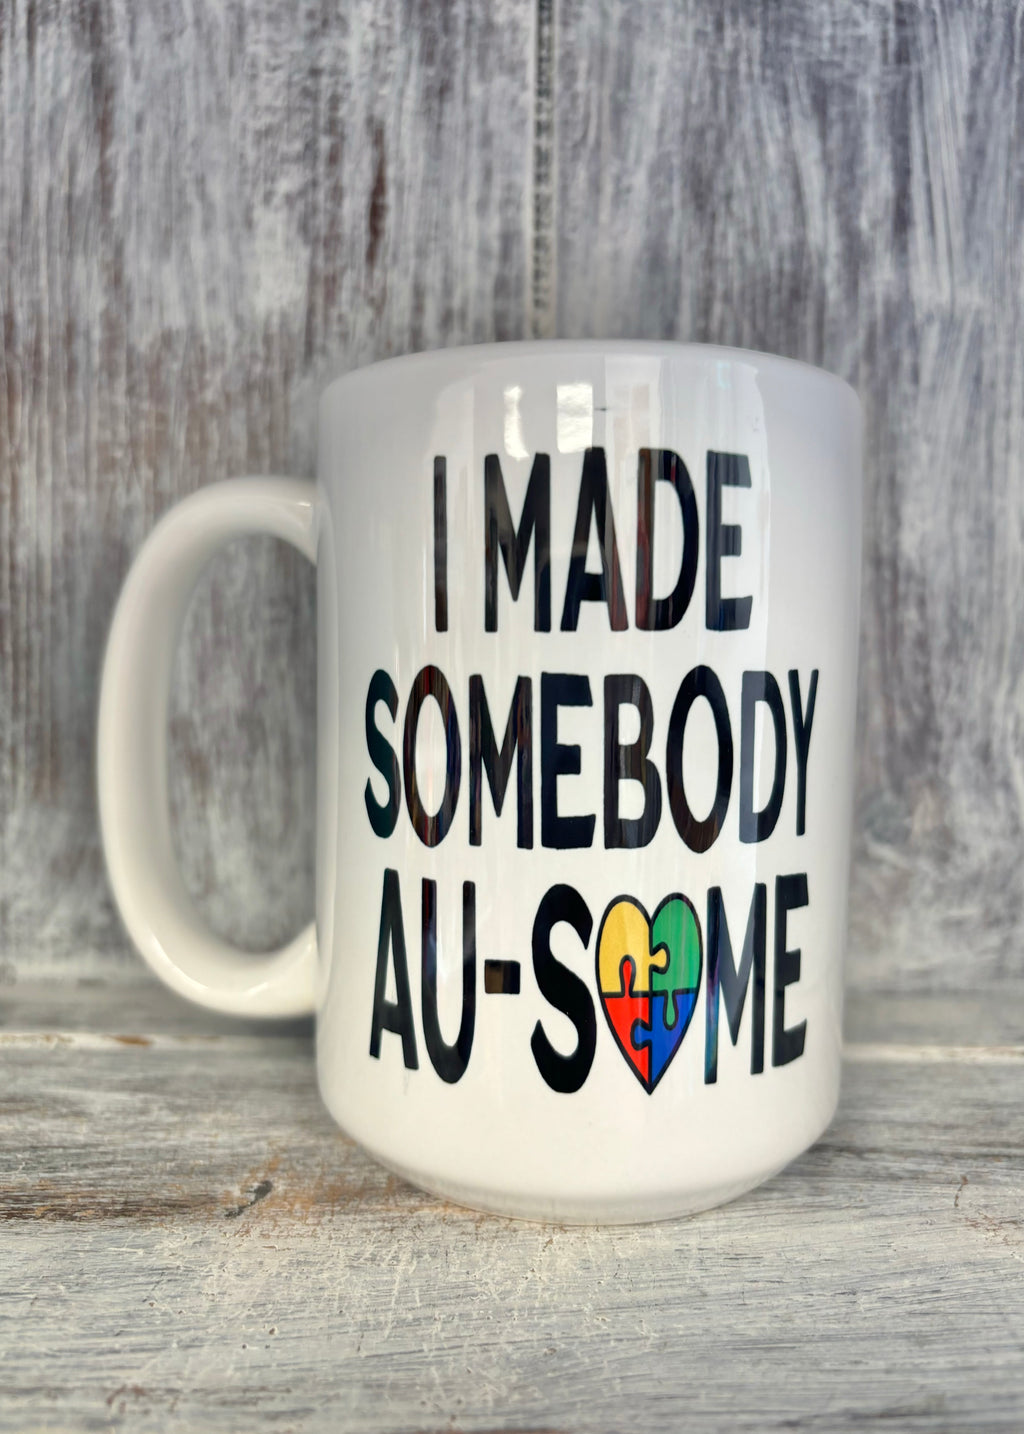 I Made Somebody AU-SOME Mug